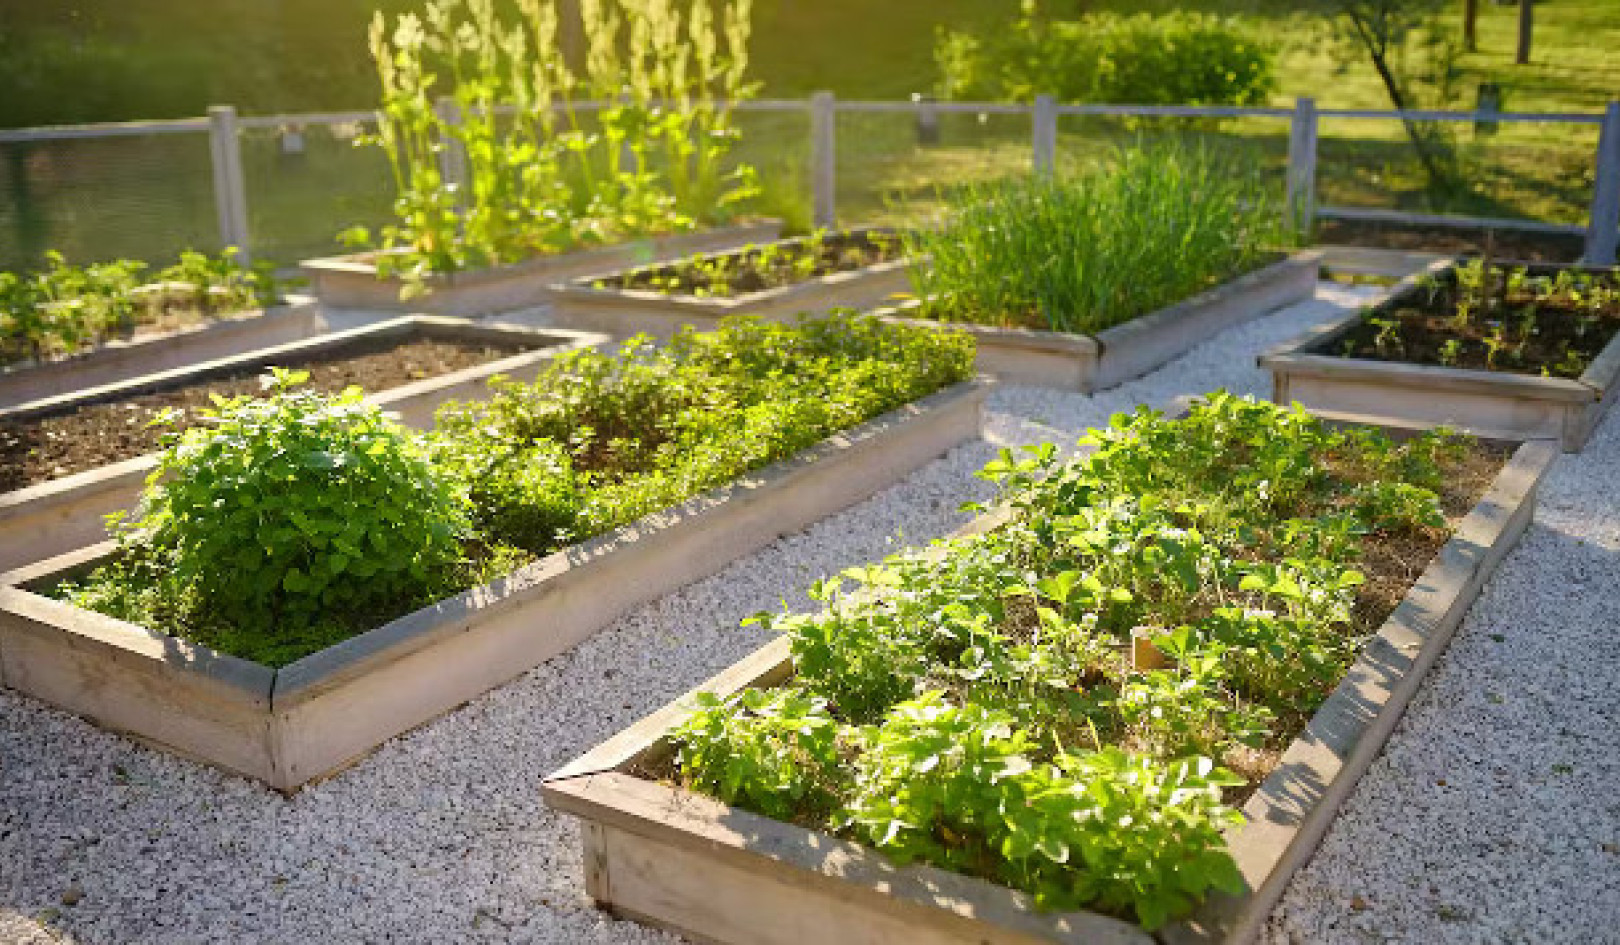 Den nøysomme matelskeren: Skjær dagligvareregningene dine gjennom hagearbeid og fôring